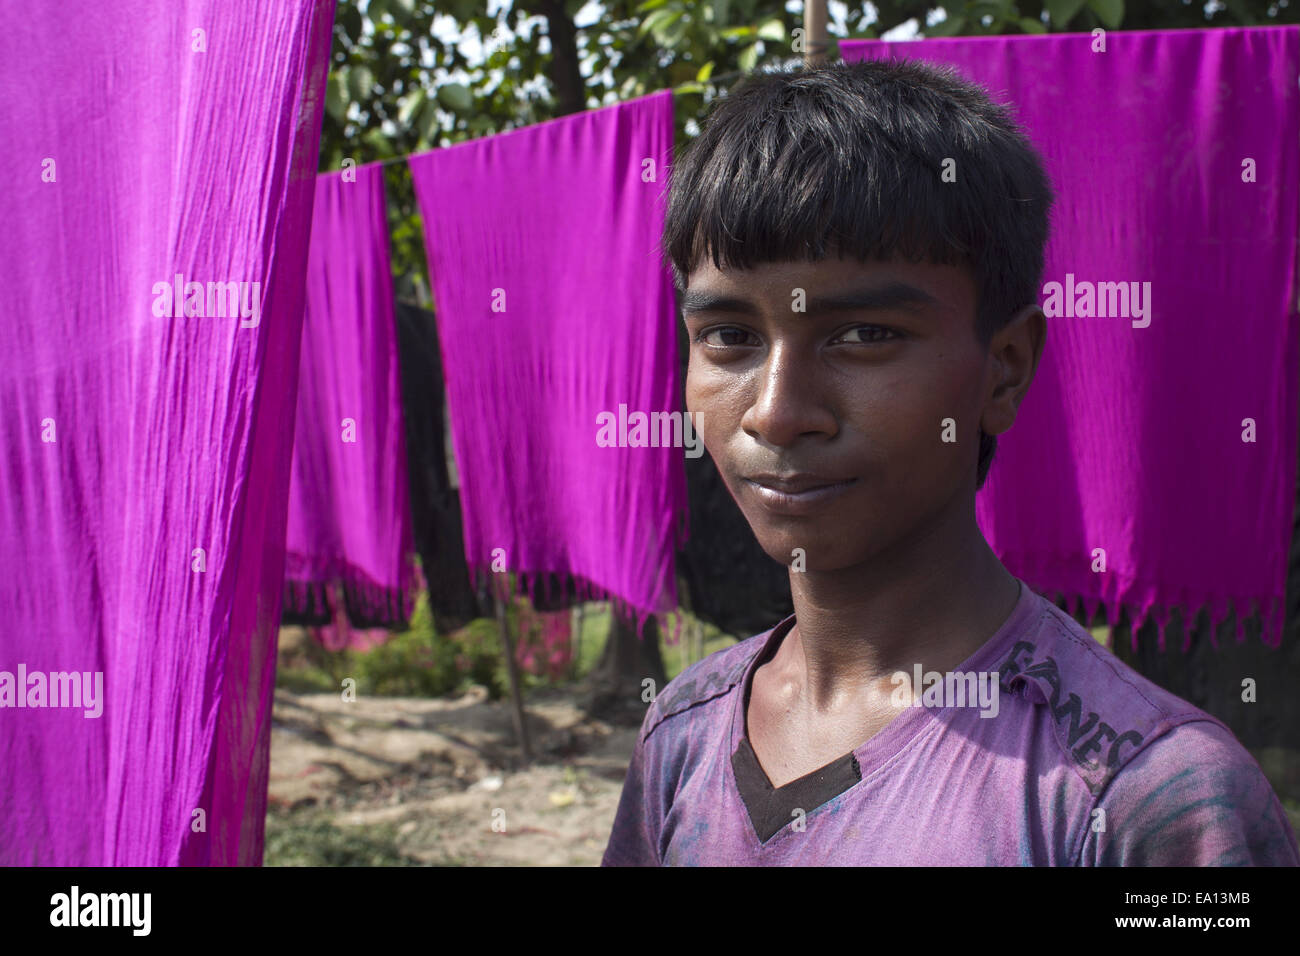 Narayangonj, Bangladesch. 5. November 2014. Ein Junge gefärbte Tücher unter Sonne trocknen, hilft er Familienunternehmen. Dorfbewohner in Bangladesch Hand gefärbte Kleidung Geschäfte zu machen. Kleinkredit nehmen sie sammeln, roh Tücher aus Fabrik, nachdem gefärbt sie unter Sonne getrocknet und dann verkaufen sie im Markt und sie sind jetzt stabil. © Zakir Hossain Chowdhury/ZUMA Draht/Alamy Live-Nachrichten Stockfoto